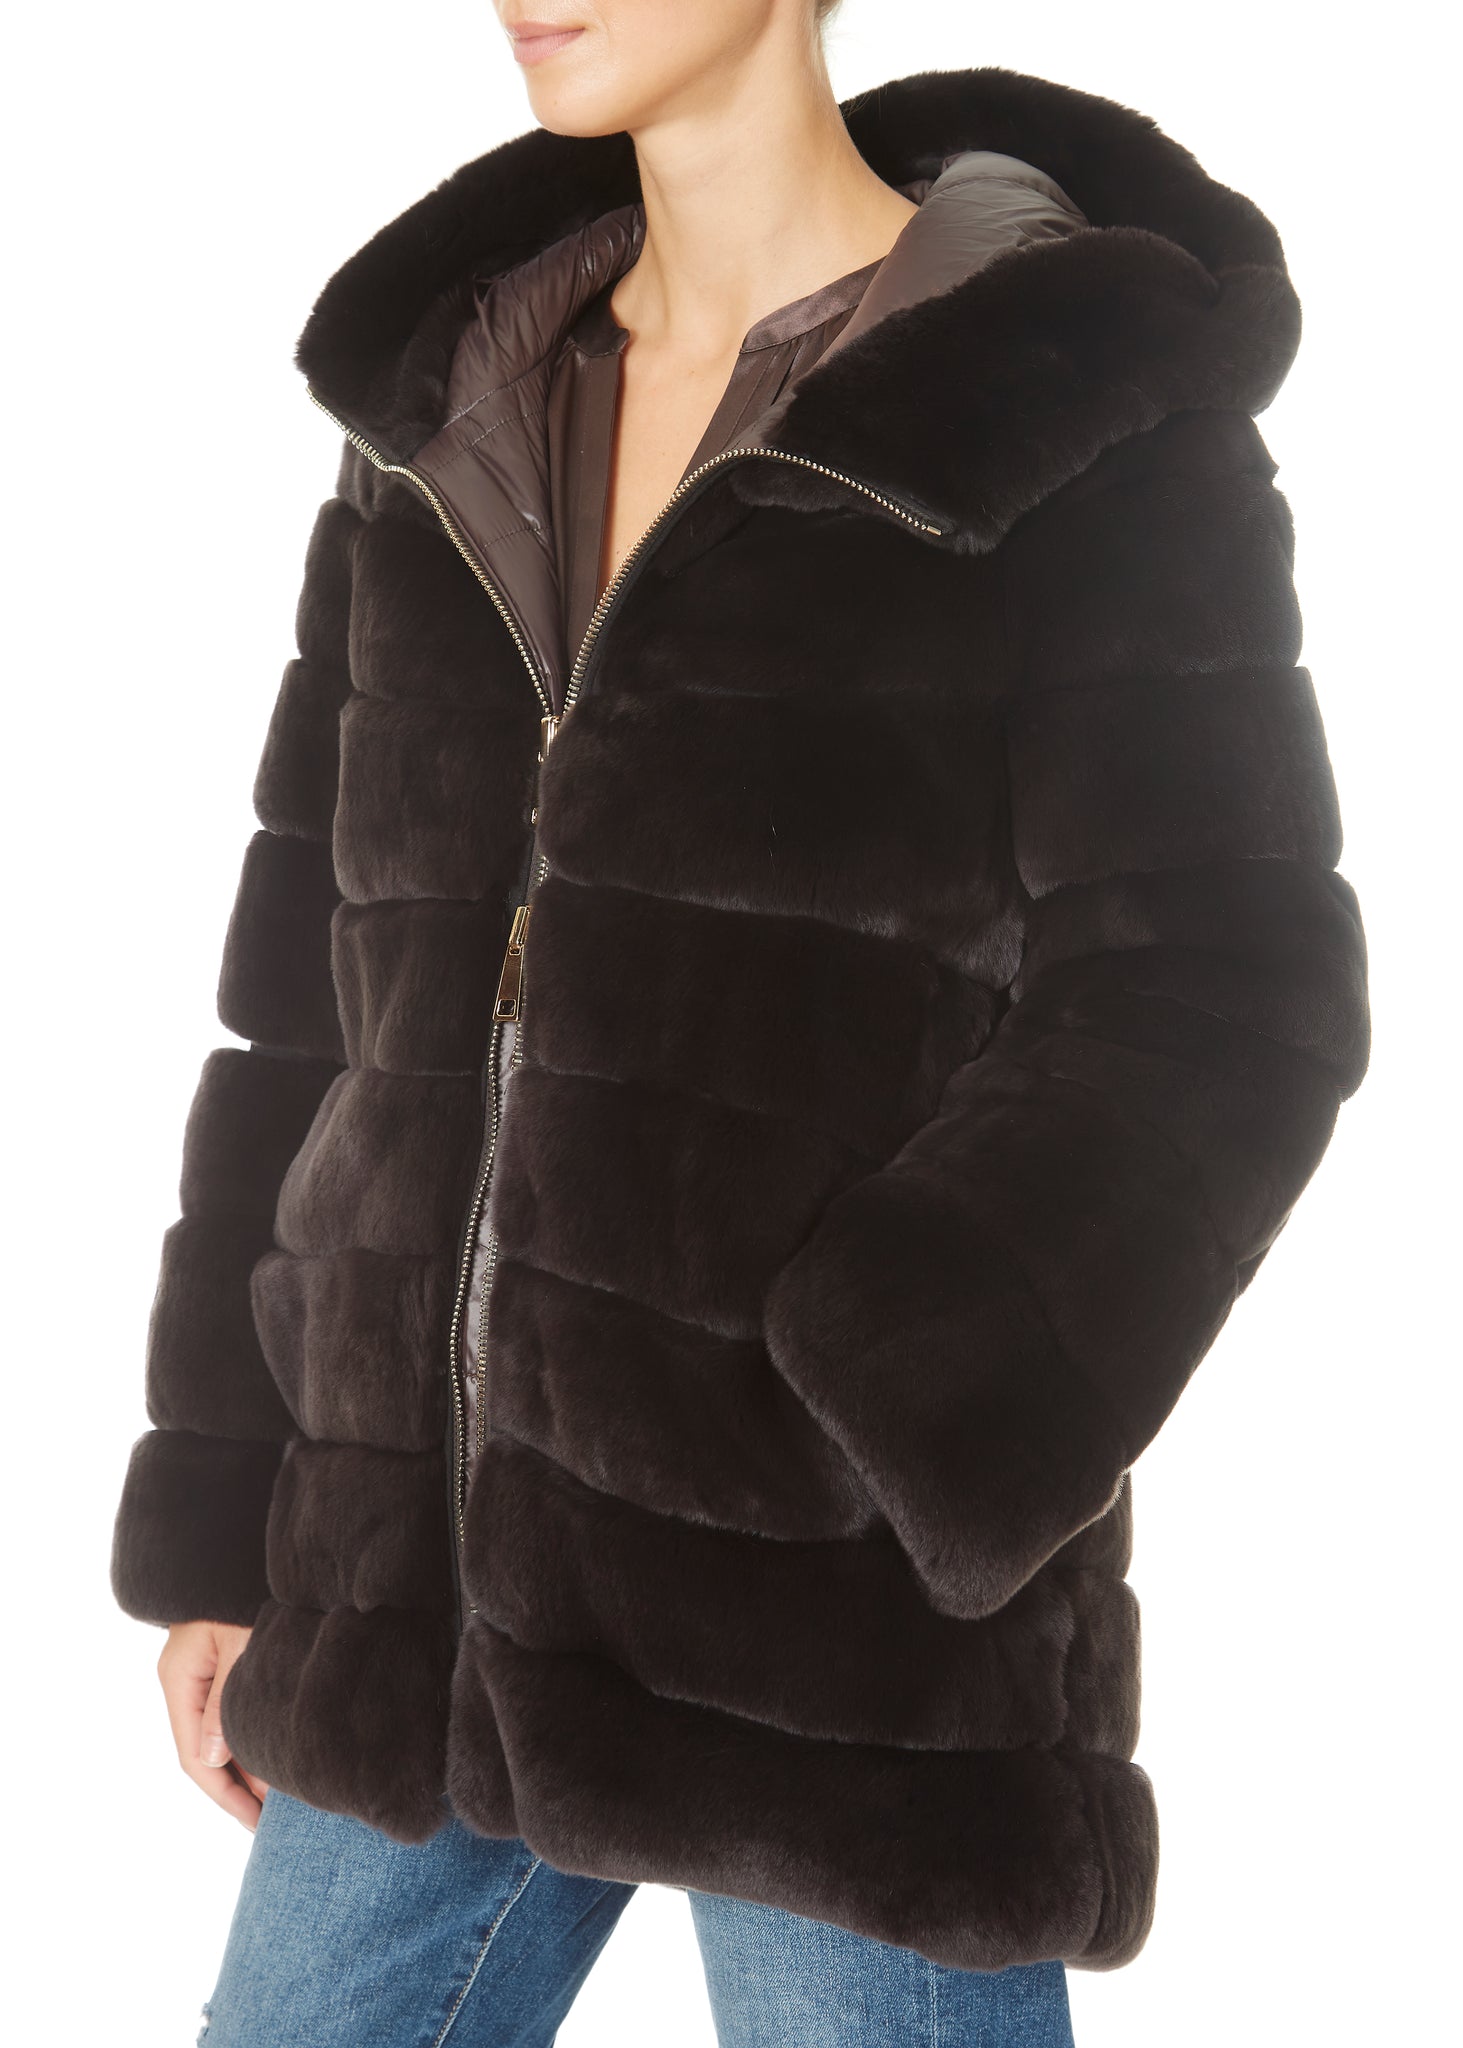 Suprema 'Reversible Brown Fur Coat' - Jessimara